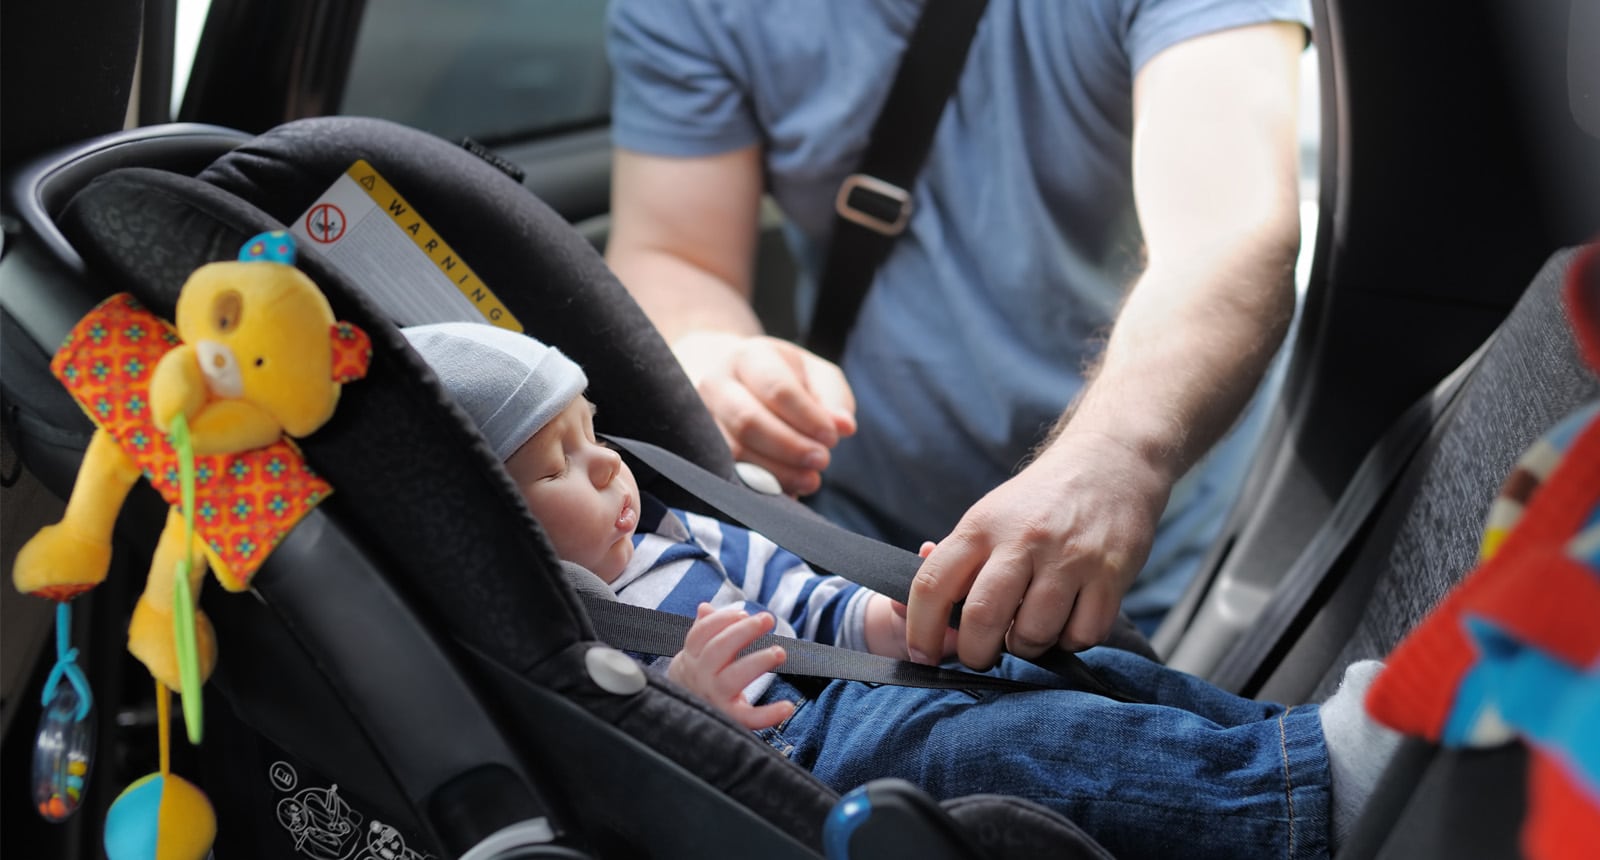 DGT, Las cuatro sillas de bebé para el coche que desaconsejan los expertos